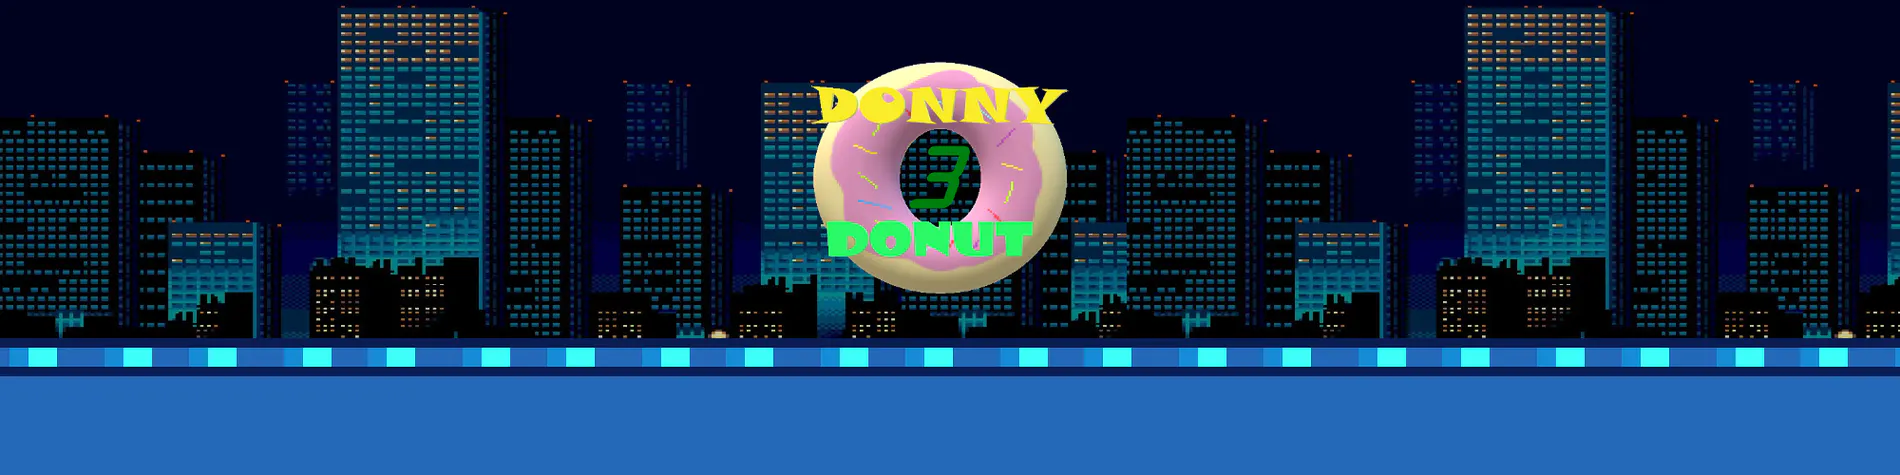 Donny Donut 3